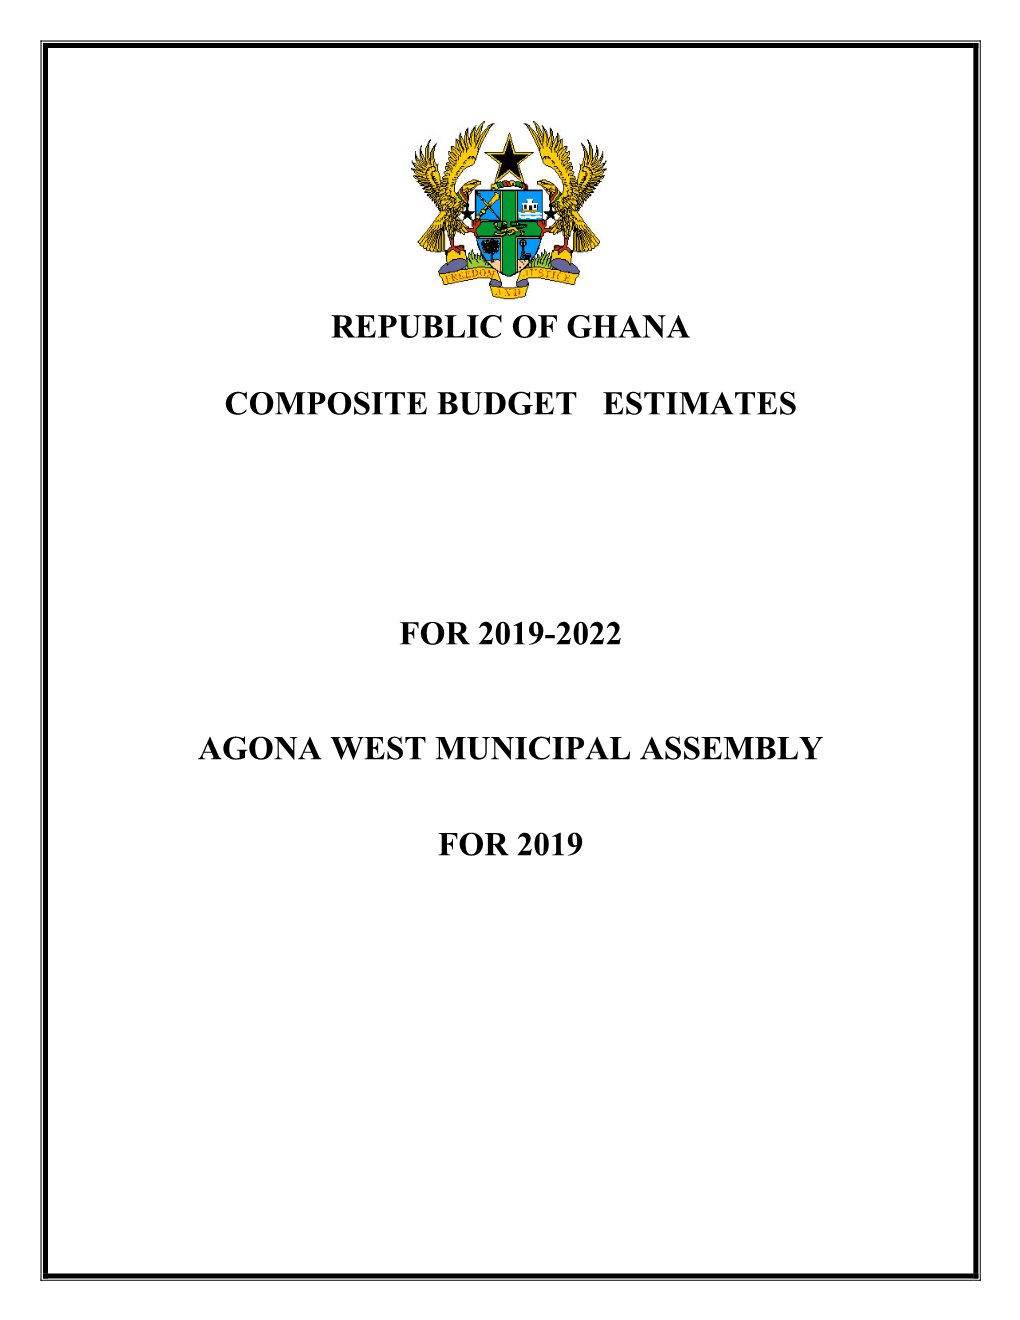 Republic of Ghana Composite Budget Estimates for 2019-2022 Agona